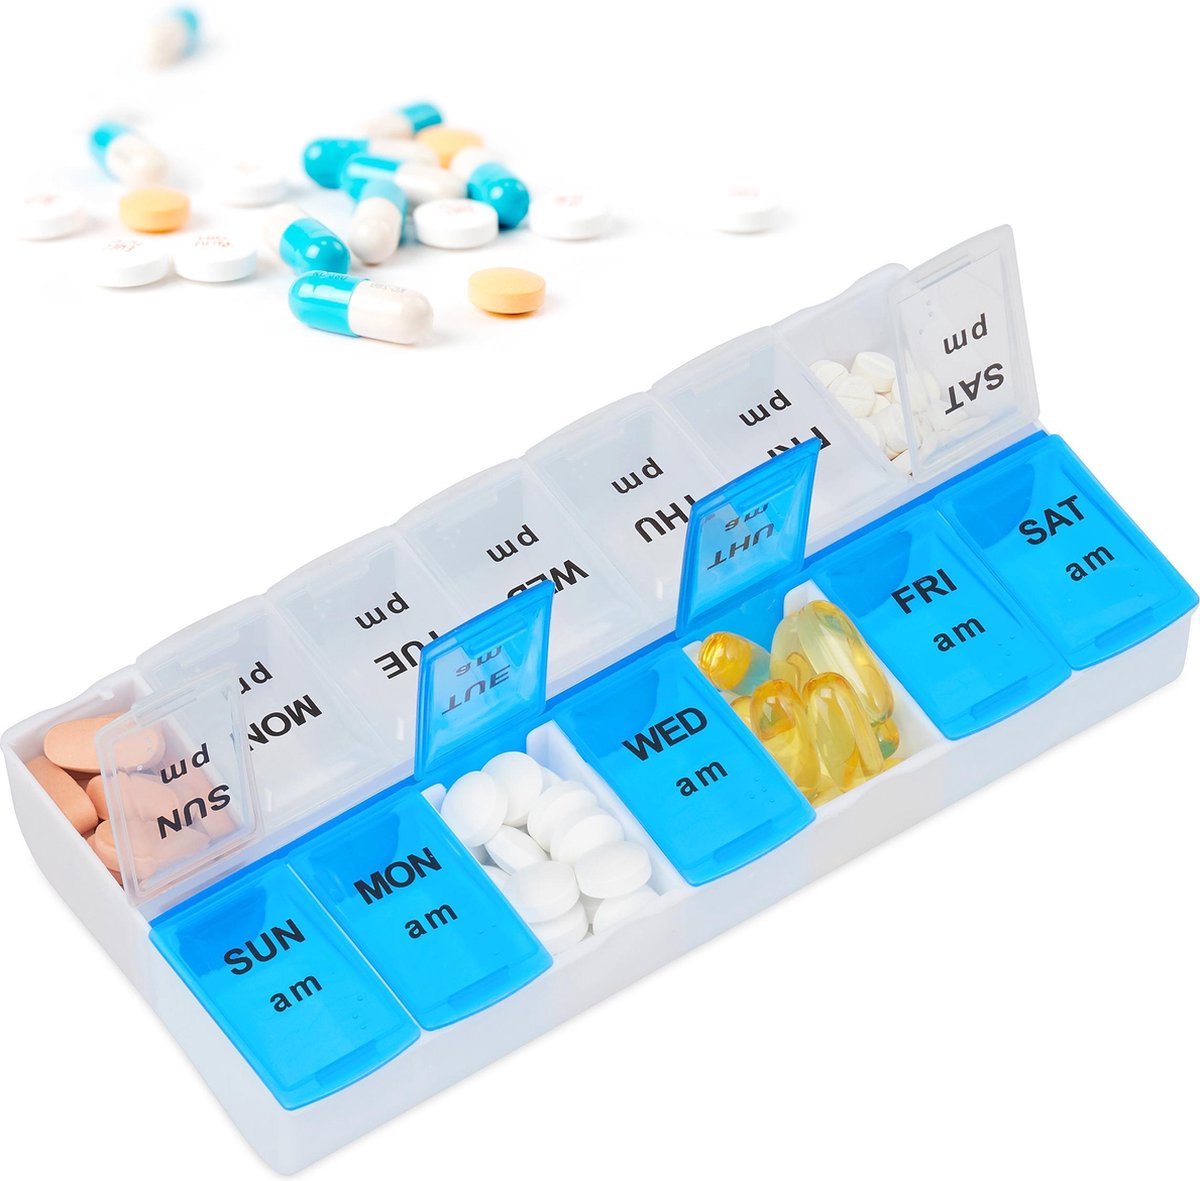 Relaxdays pillenbox 7 dagen 2 vakken - medicamentendoos Engels - pillendoosje wit-blauw